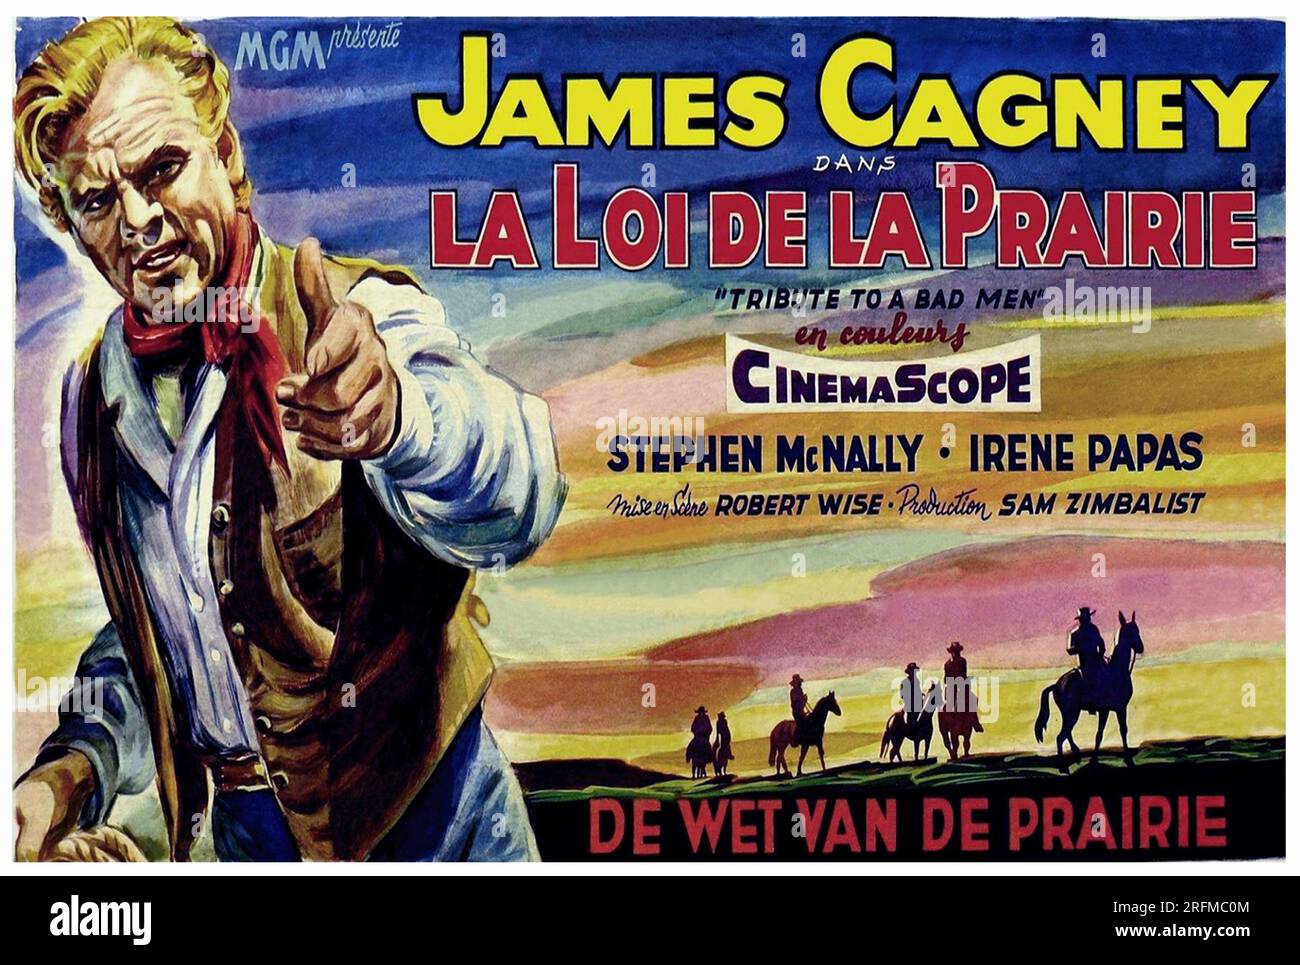 James Cagney im Film „La Loi De La Prairie“ aus dem Jahr 1956 (Tribut an einen bösen Mann). Französisches Poster Stockfoto